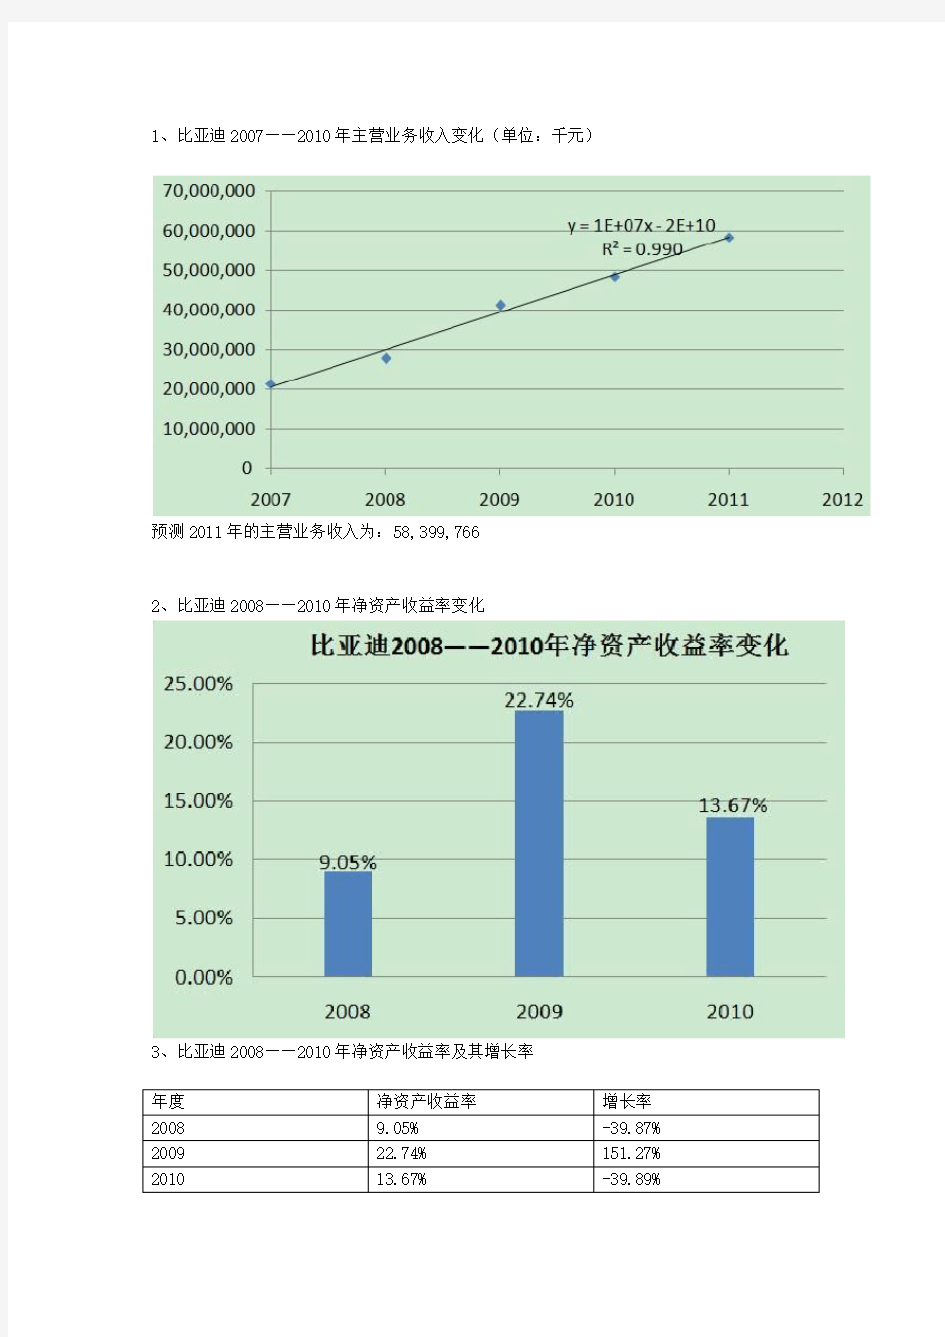 比亚迪2007——2010年所有财务报表表格和详细数据